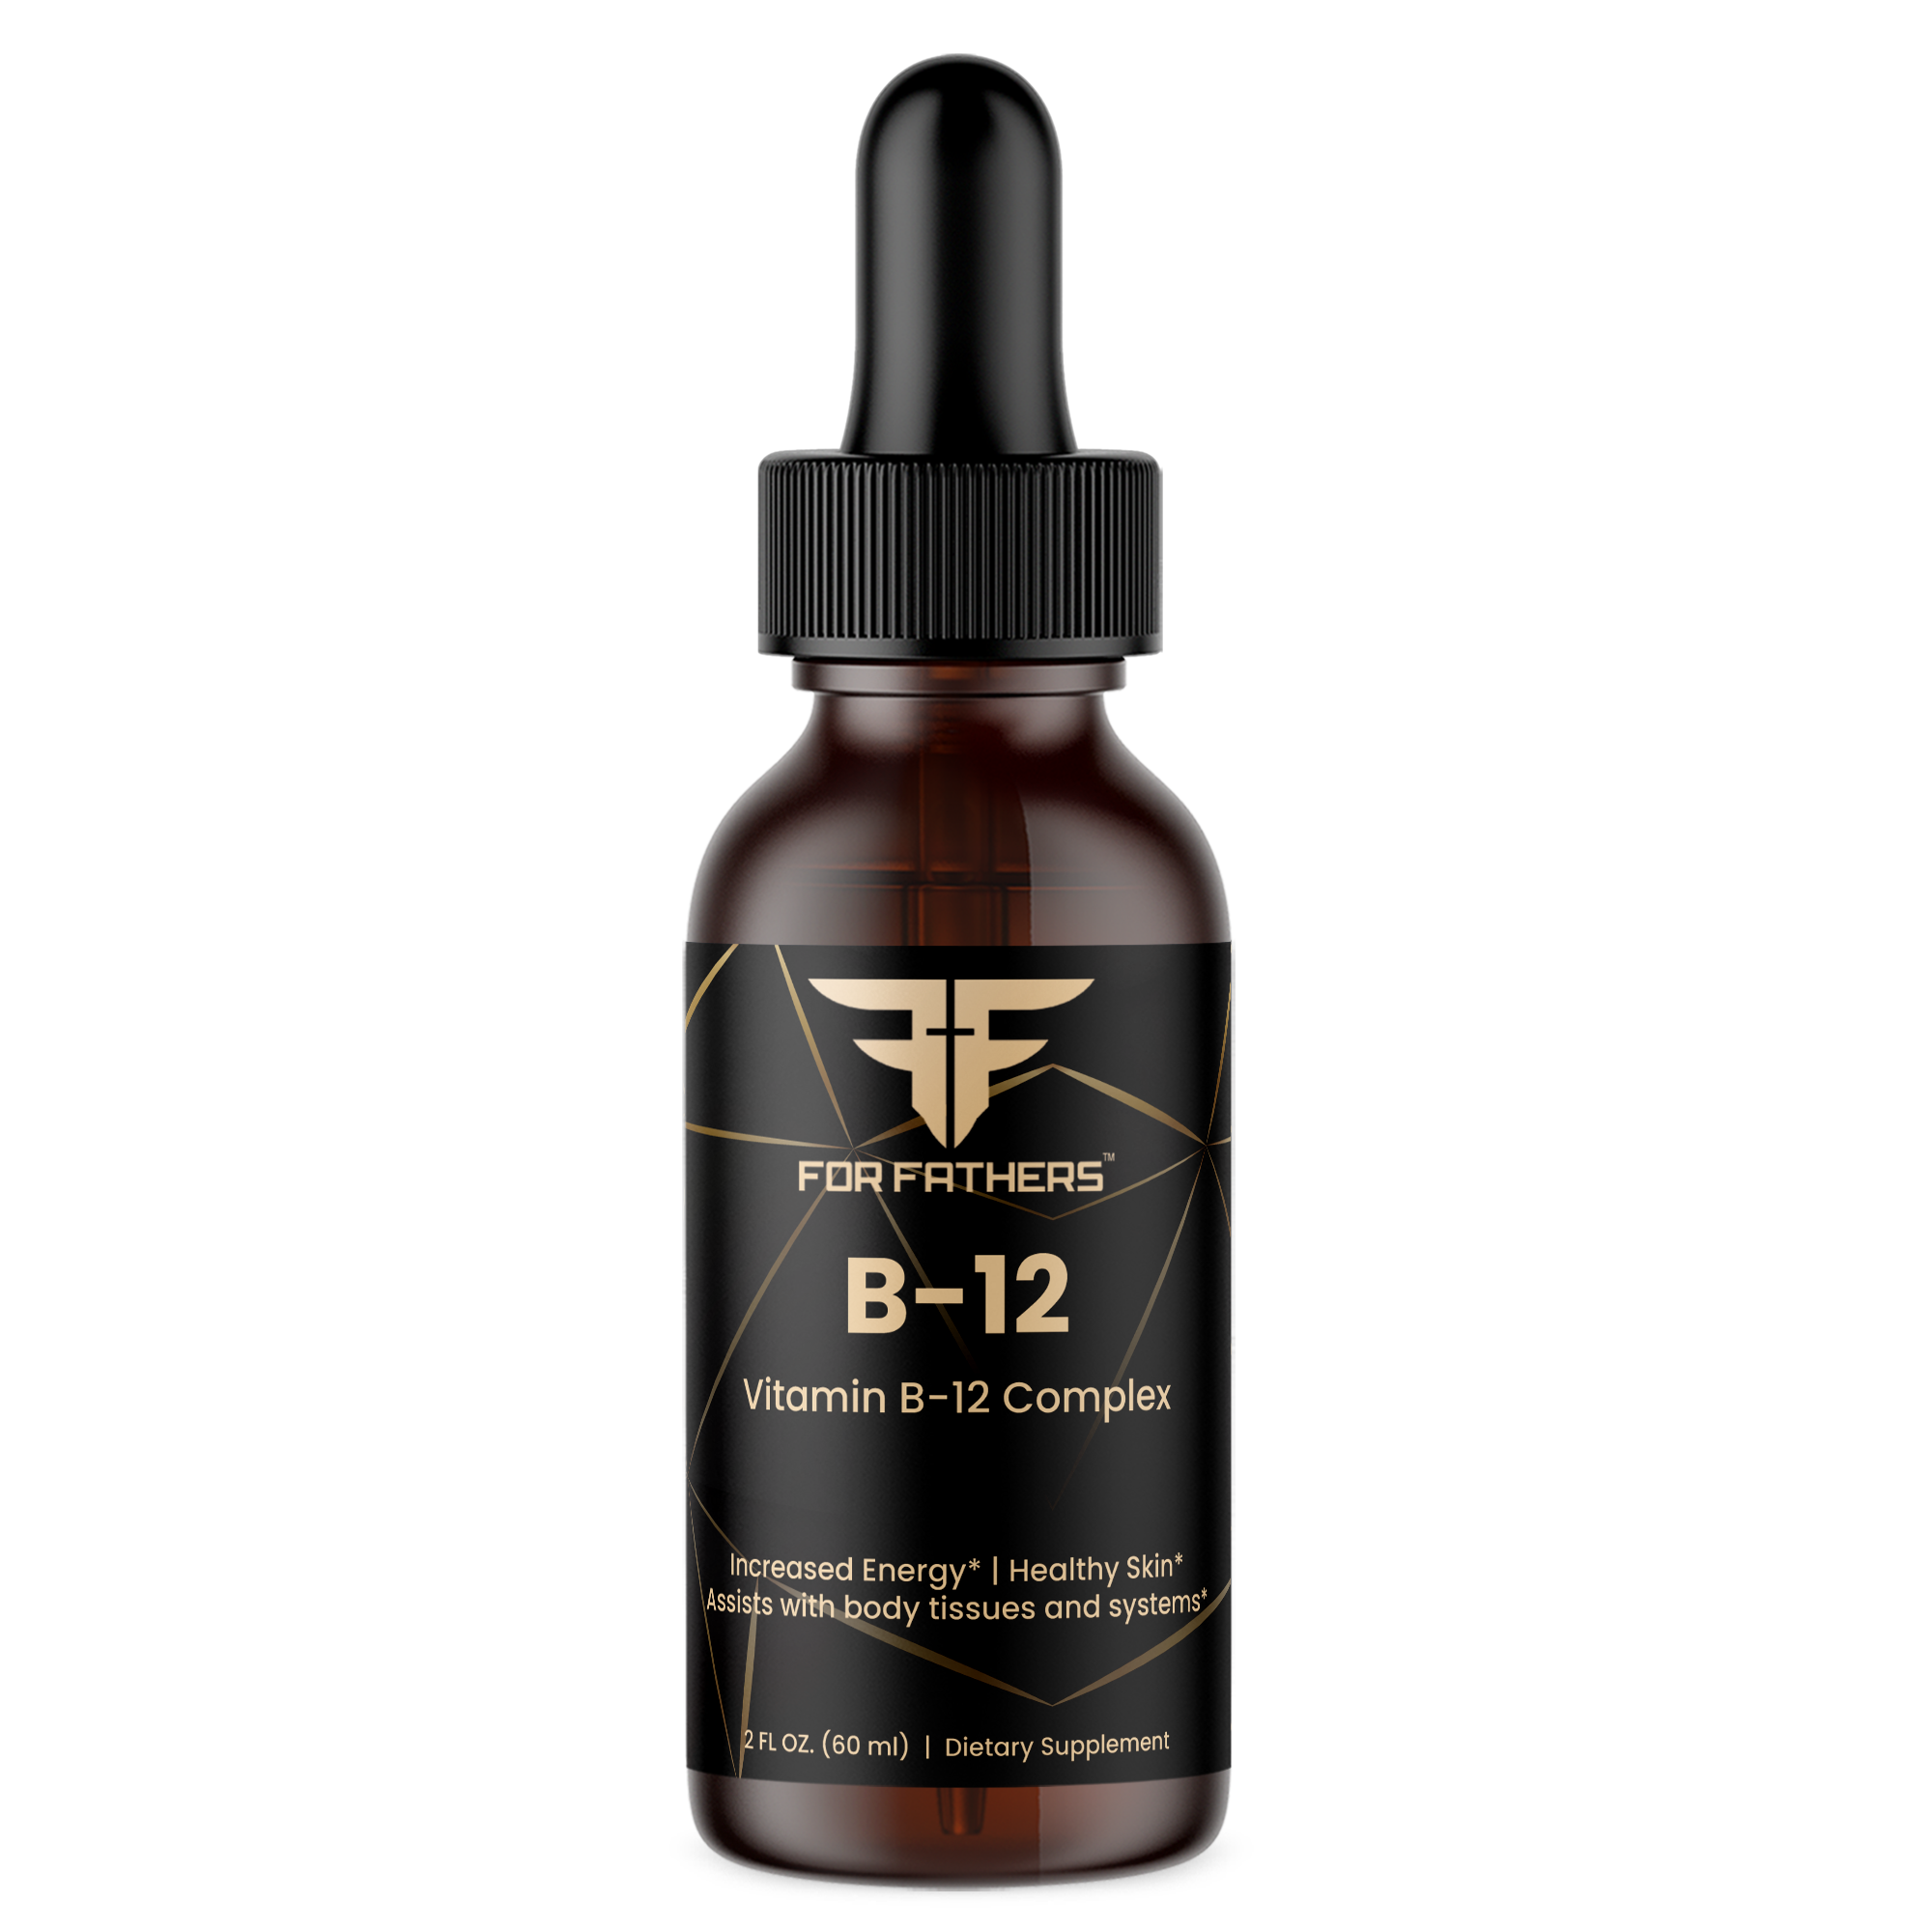 B-12 (Vitamin B-12 Complex)